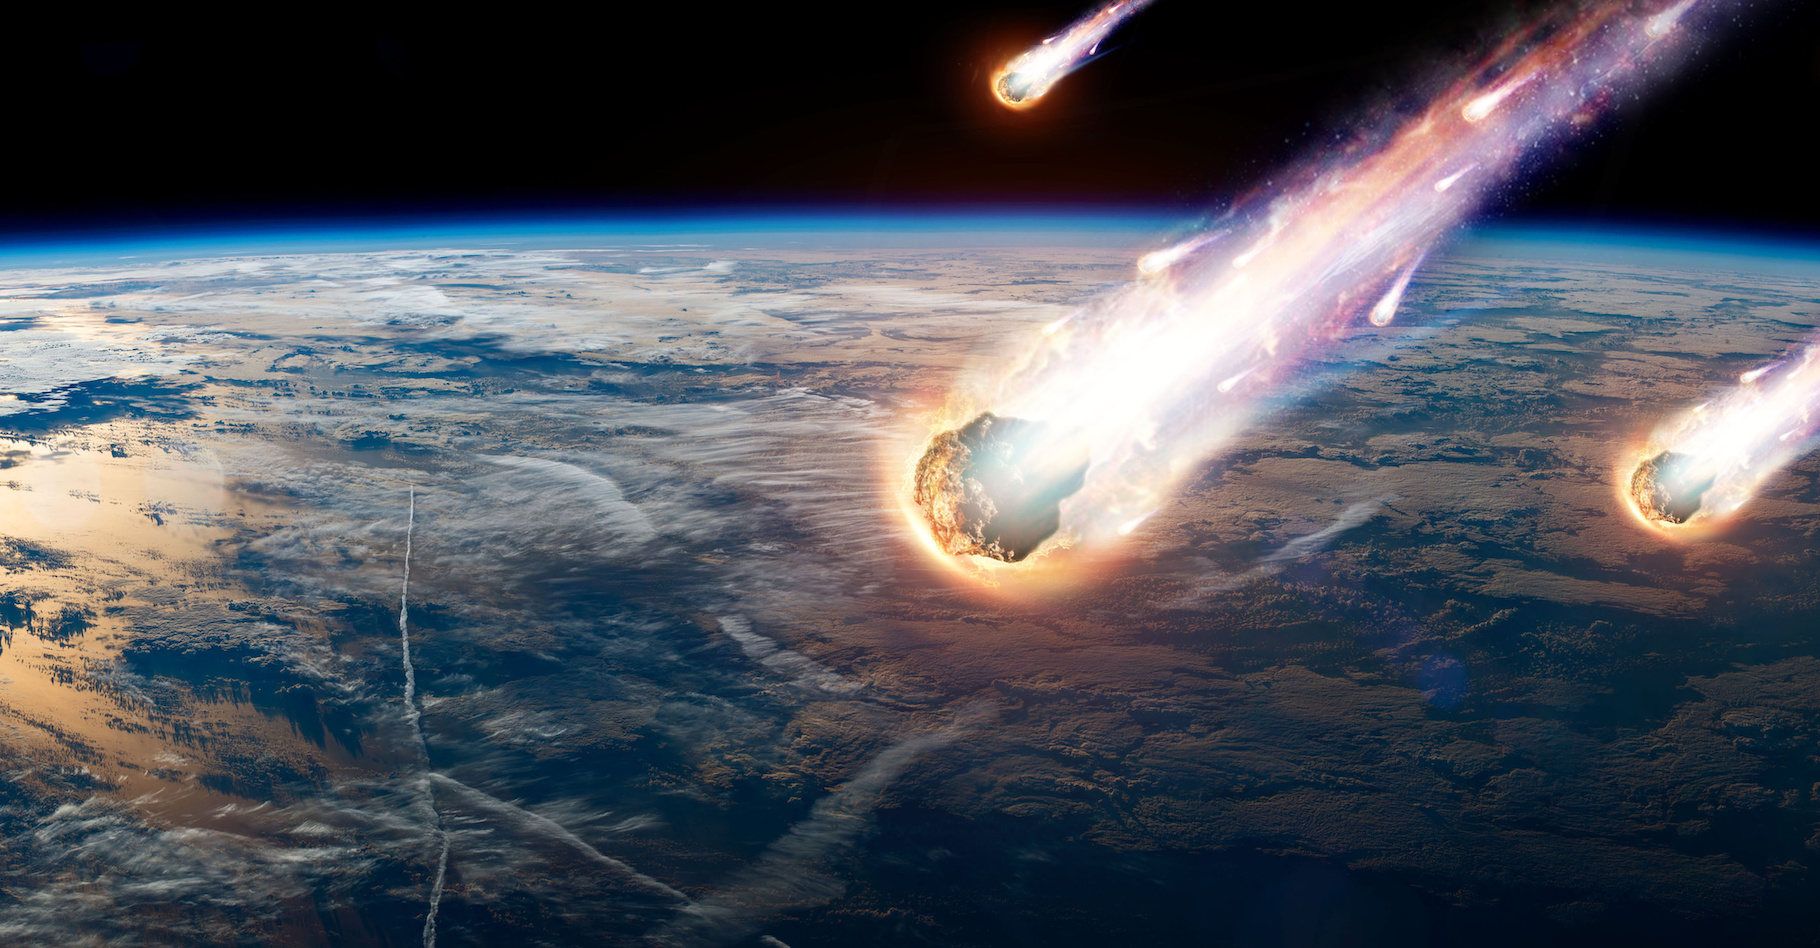 L’analyse d’une météorite particulièrement bien conservée permet aux scientifiques de confirmer que l’eau a dû être apportée sur Terre par des astéroïdes. © Aliaksandr Marko, Adobe Stock